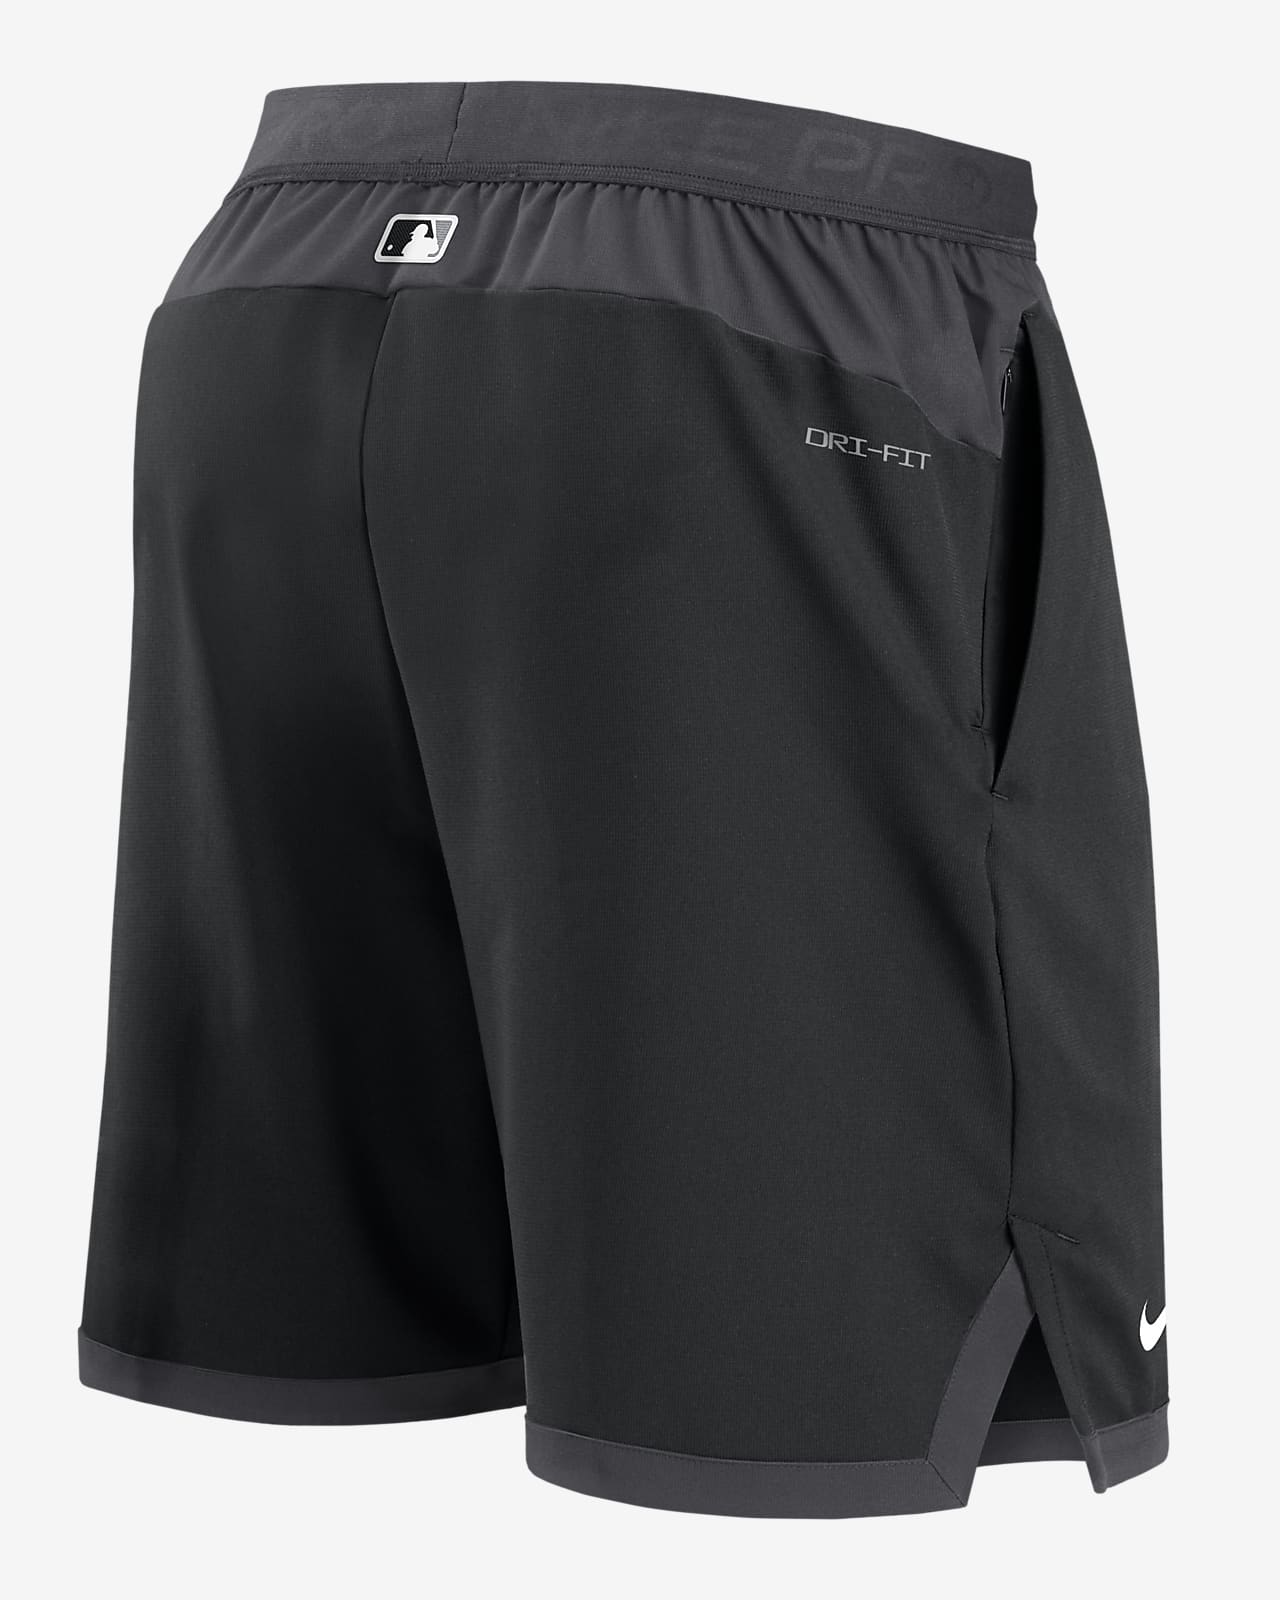 Nike Dri-FIT Flex (MLB Chicago White Sox) Men's Shorts.